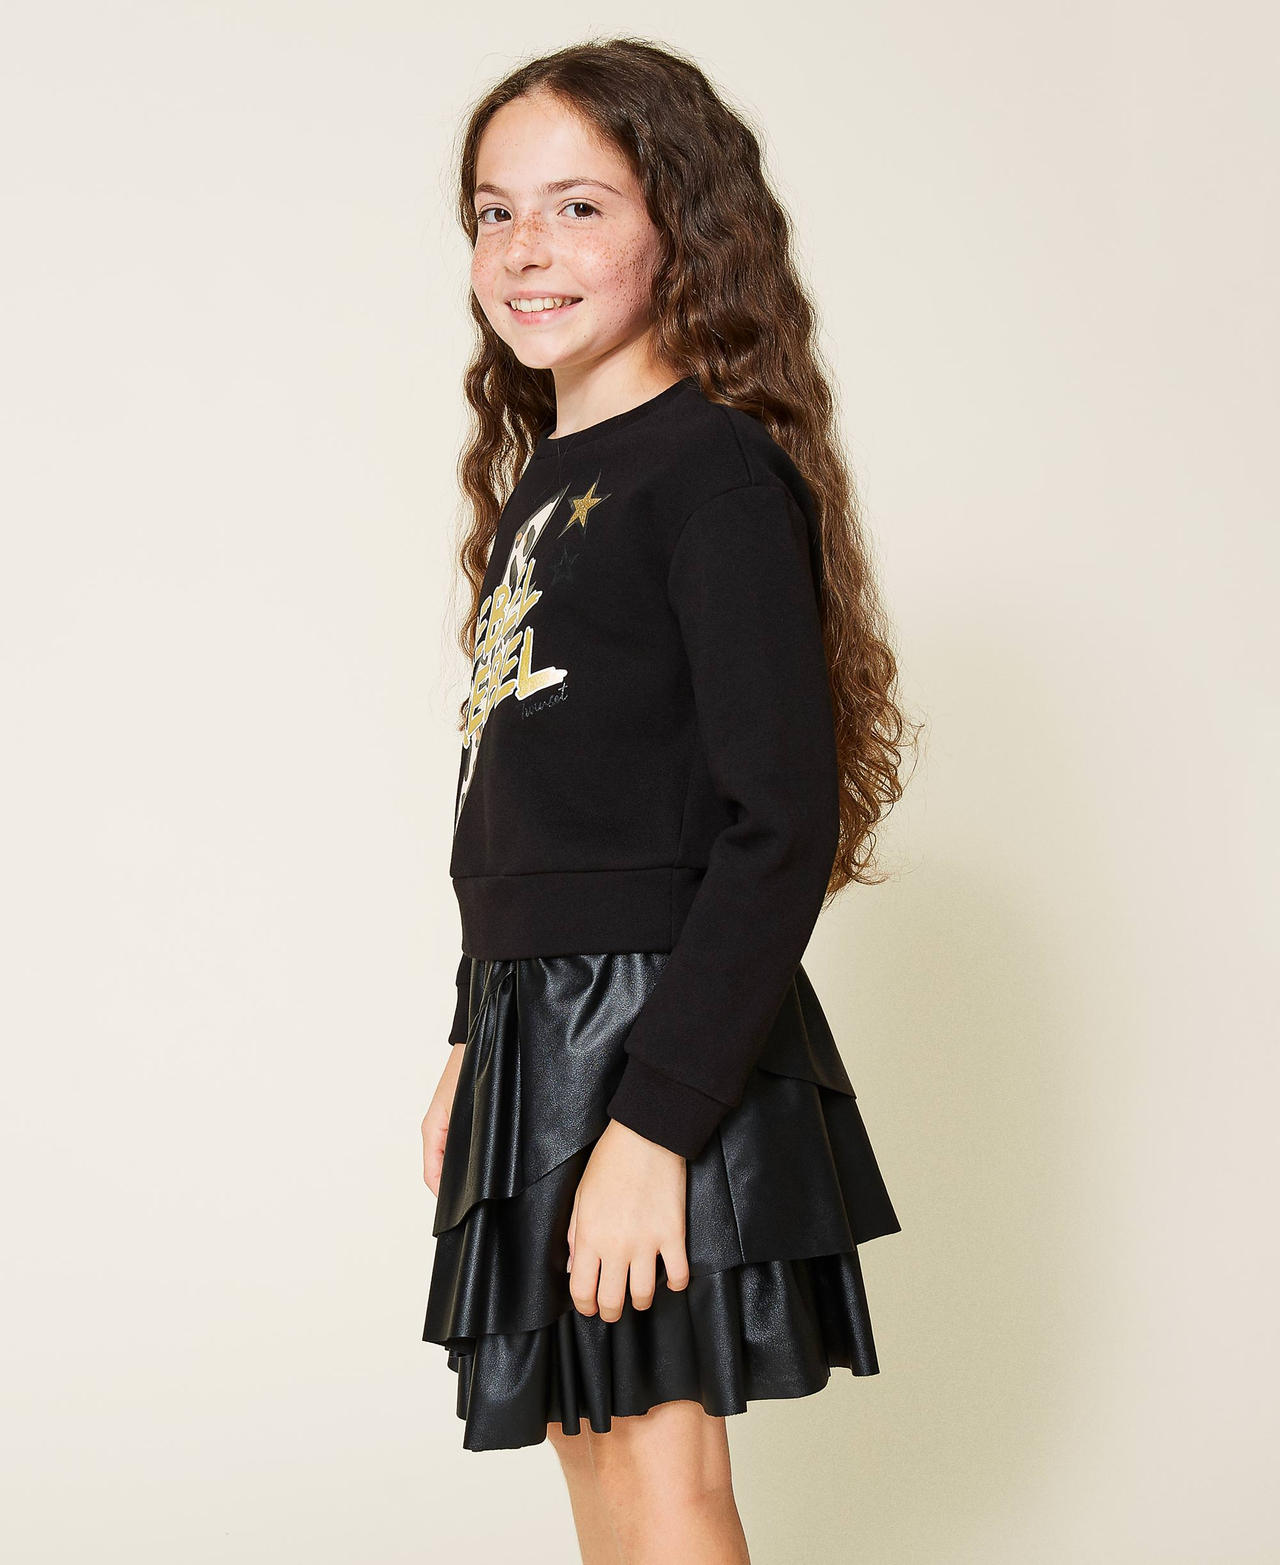 Sweatshirt with print and flounce skirt Black Girl 212GJ2250-02